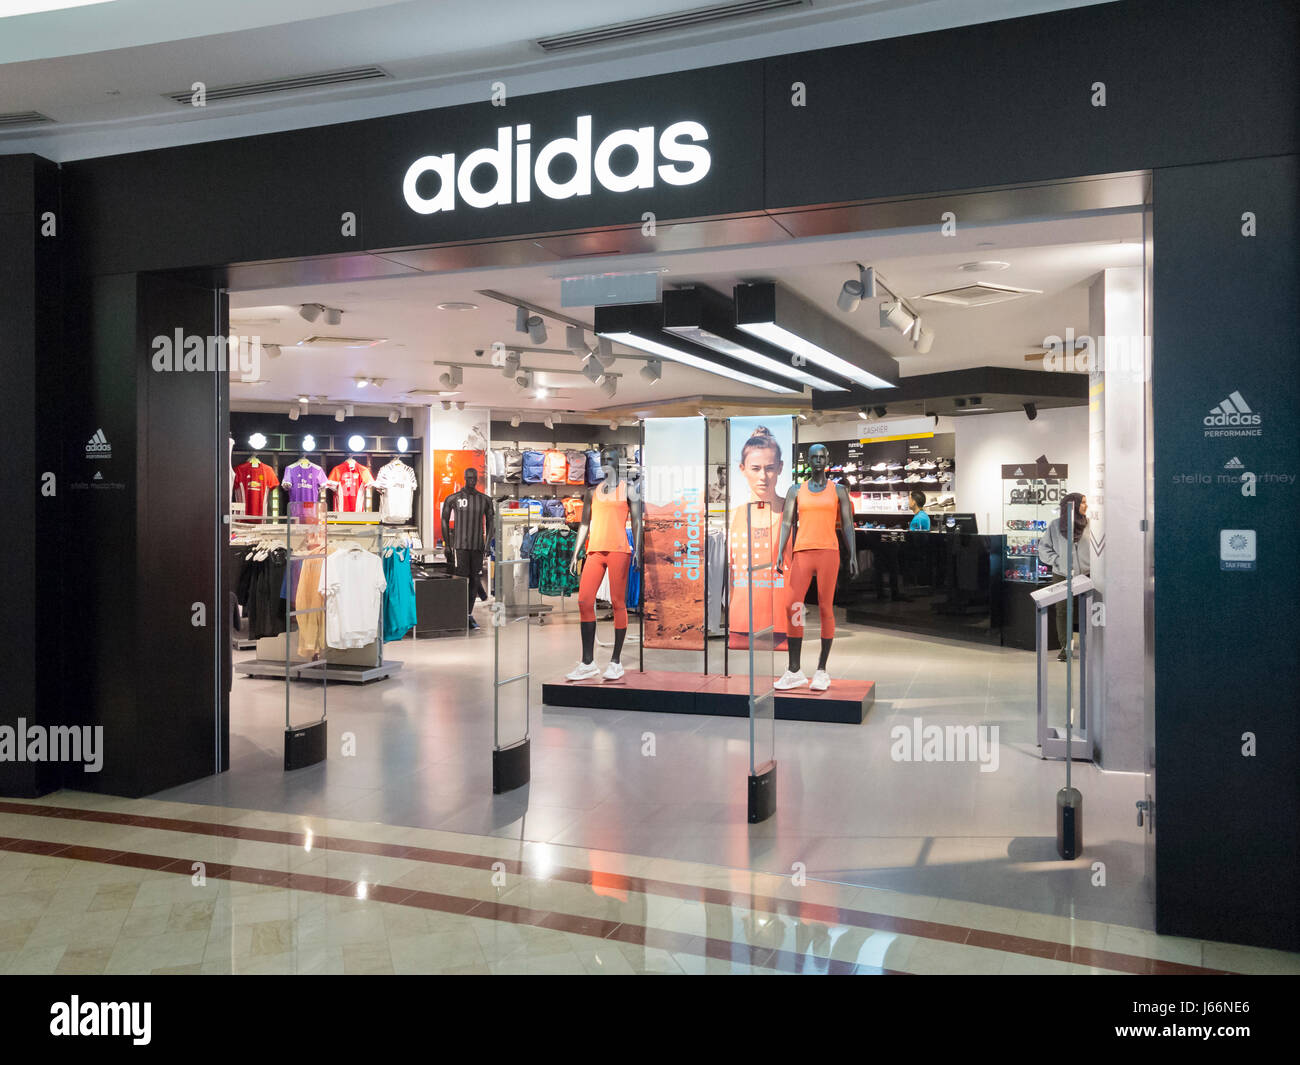 Negozio Adidas Immagini e Fotos Stock - Alamy